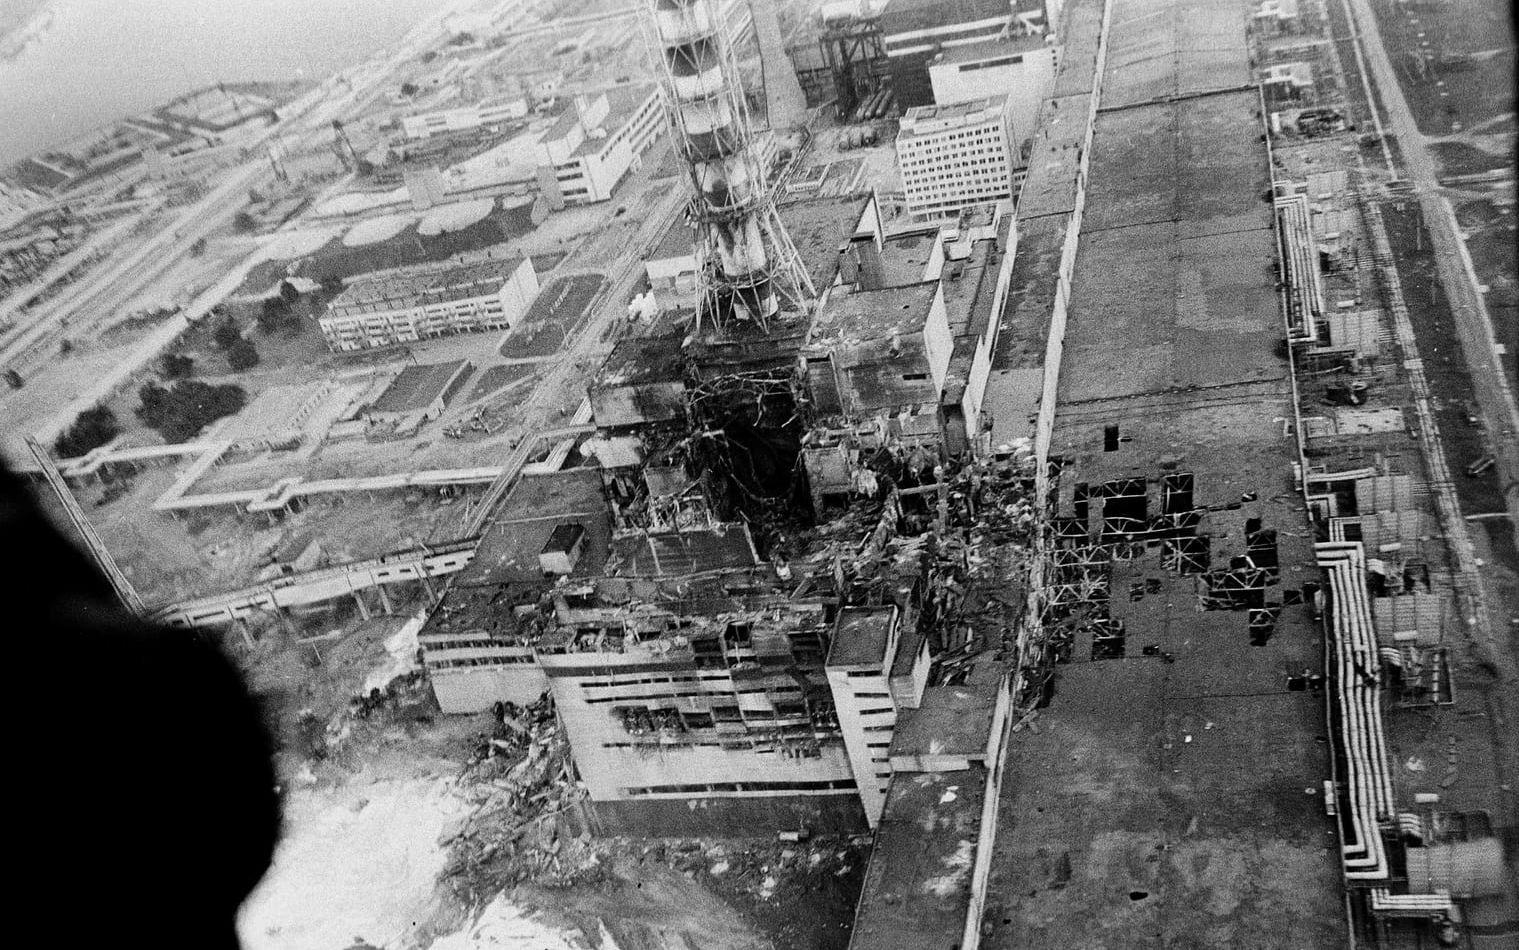 Fotografi av olycksplatsen från maj 1986. Klicka vidare för fler bilder från insatsen.